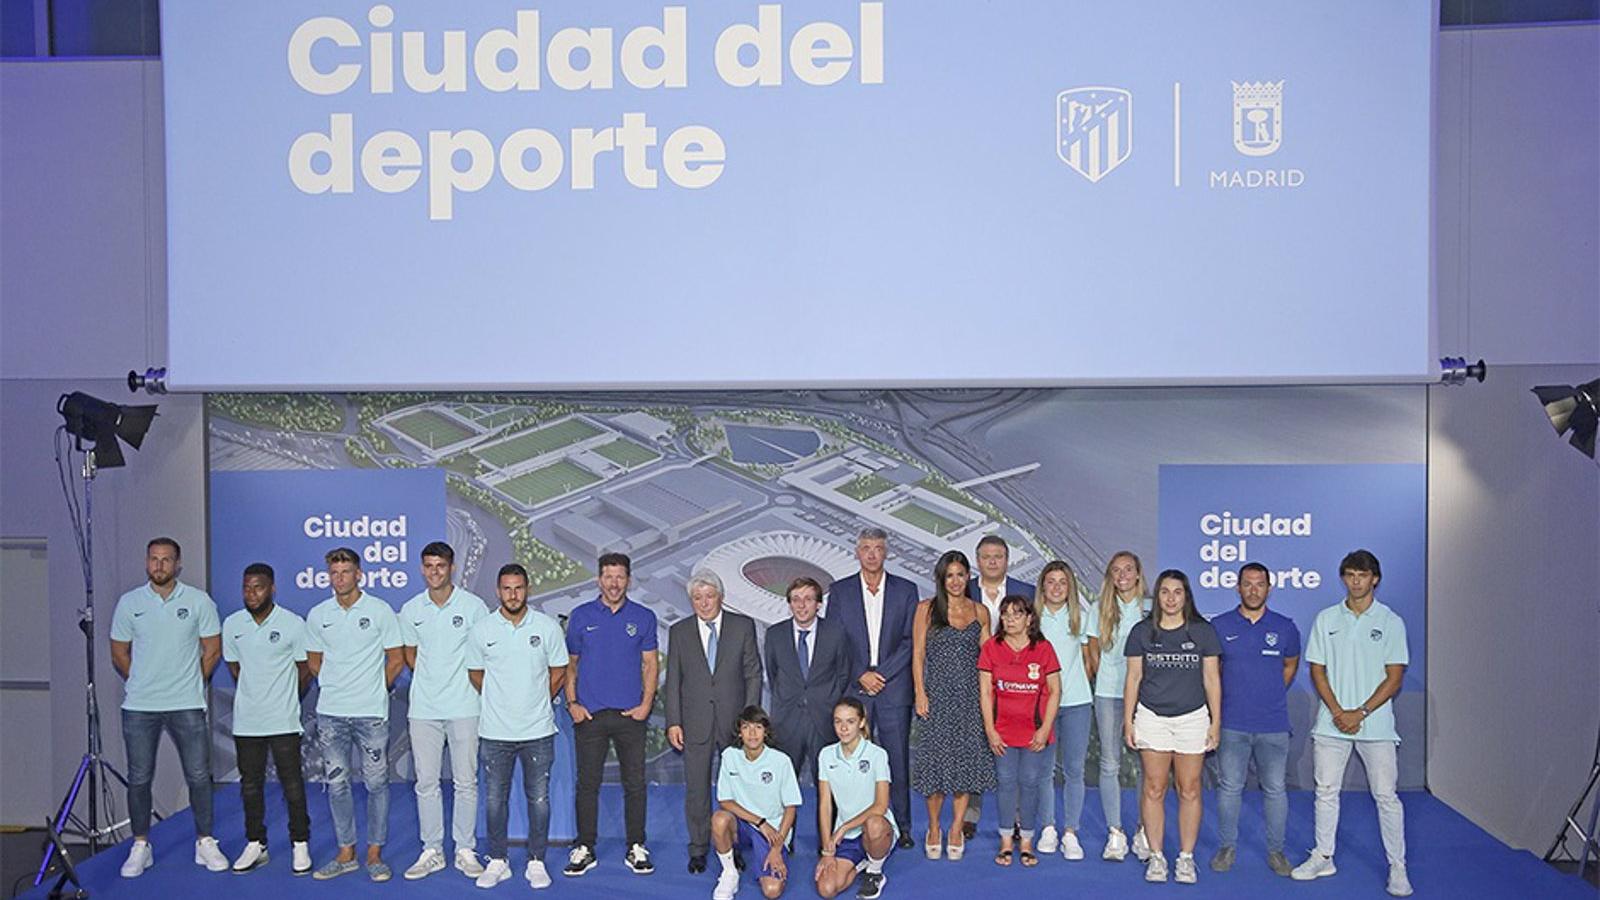 El Atlético de Madrid contrata a KPMG para el desarrollo de su ciudad deportiva